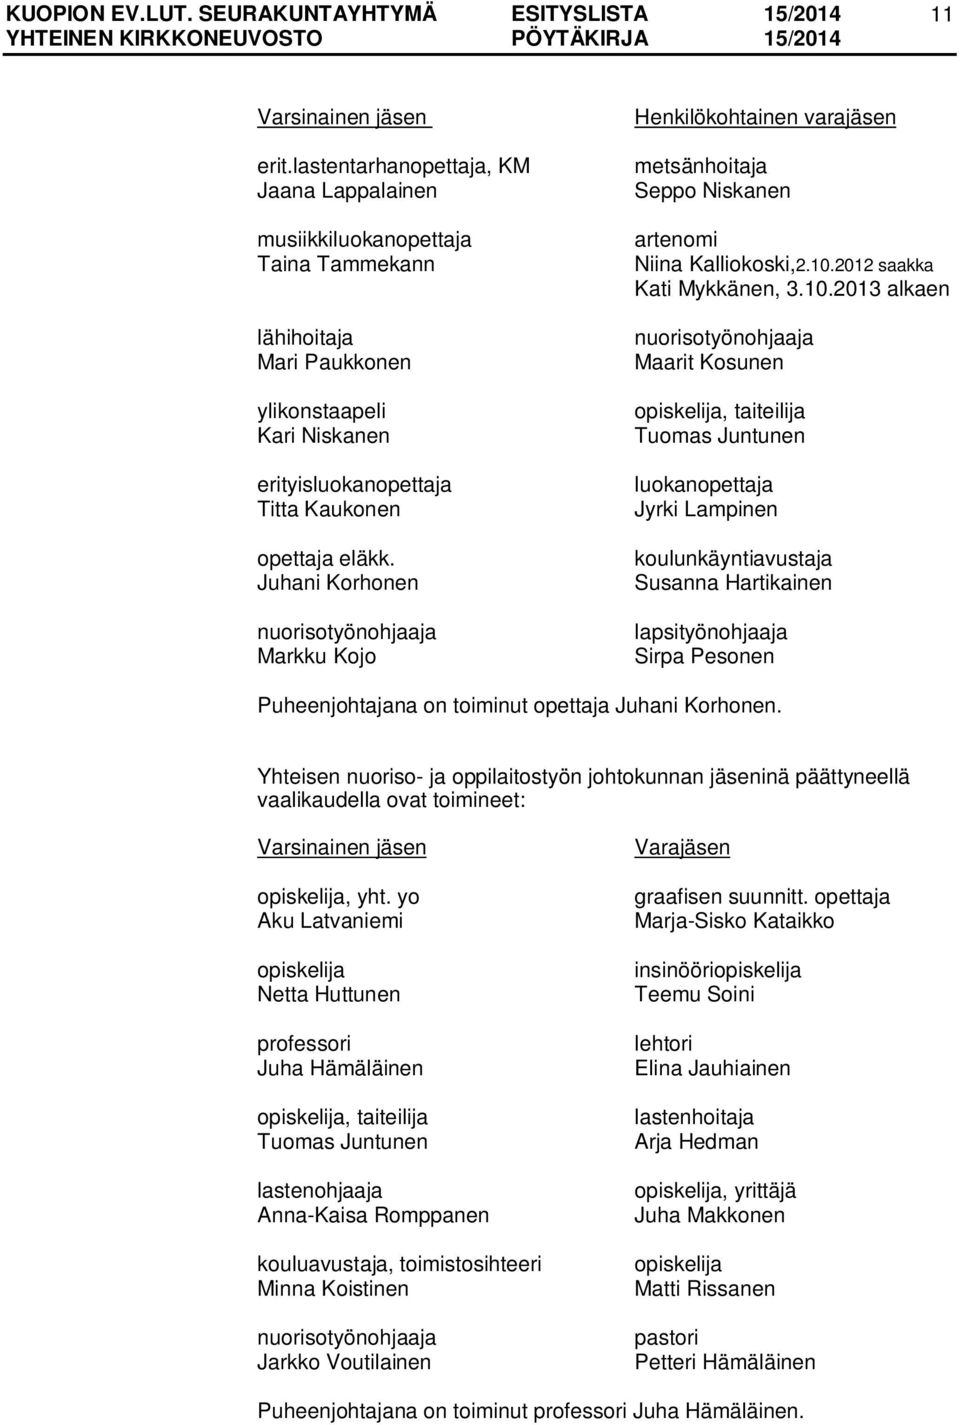 Juhani Korhonen nuorisotyönohjaaja Markku Kojo Henkilökohtainen varajäsen metsänhoitaja Seppo Niskanen artenomi Niina Kalliokoski,2.10.